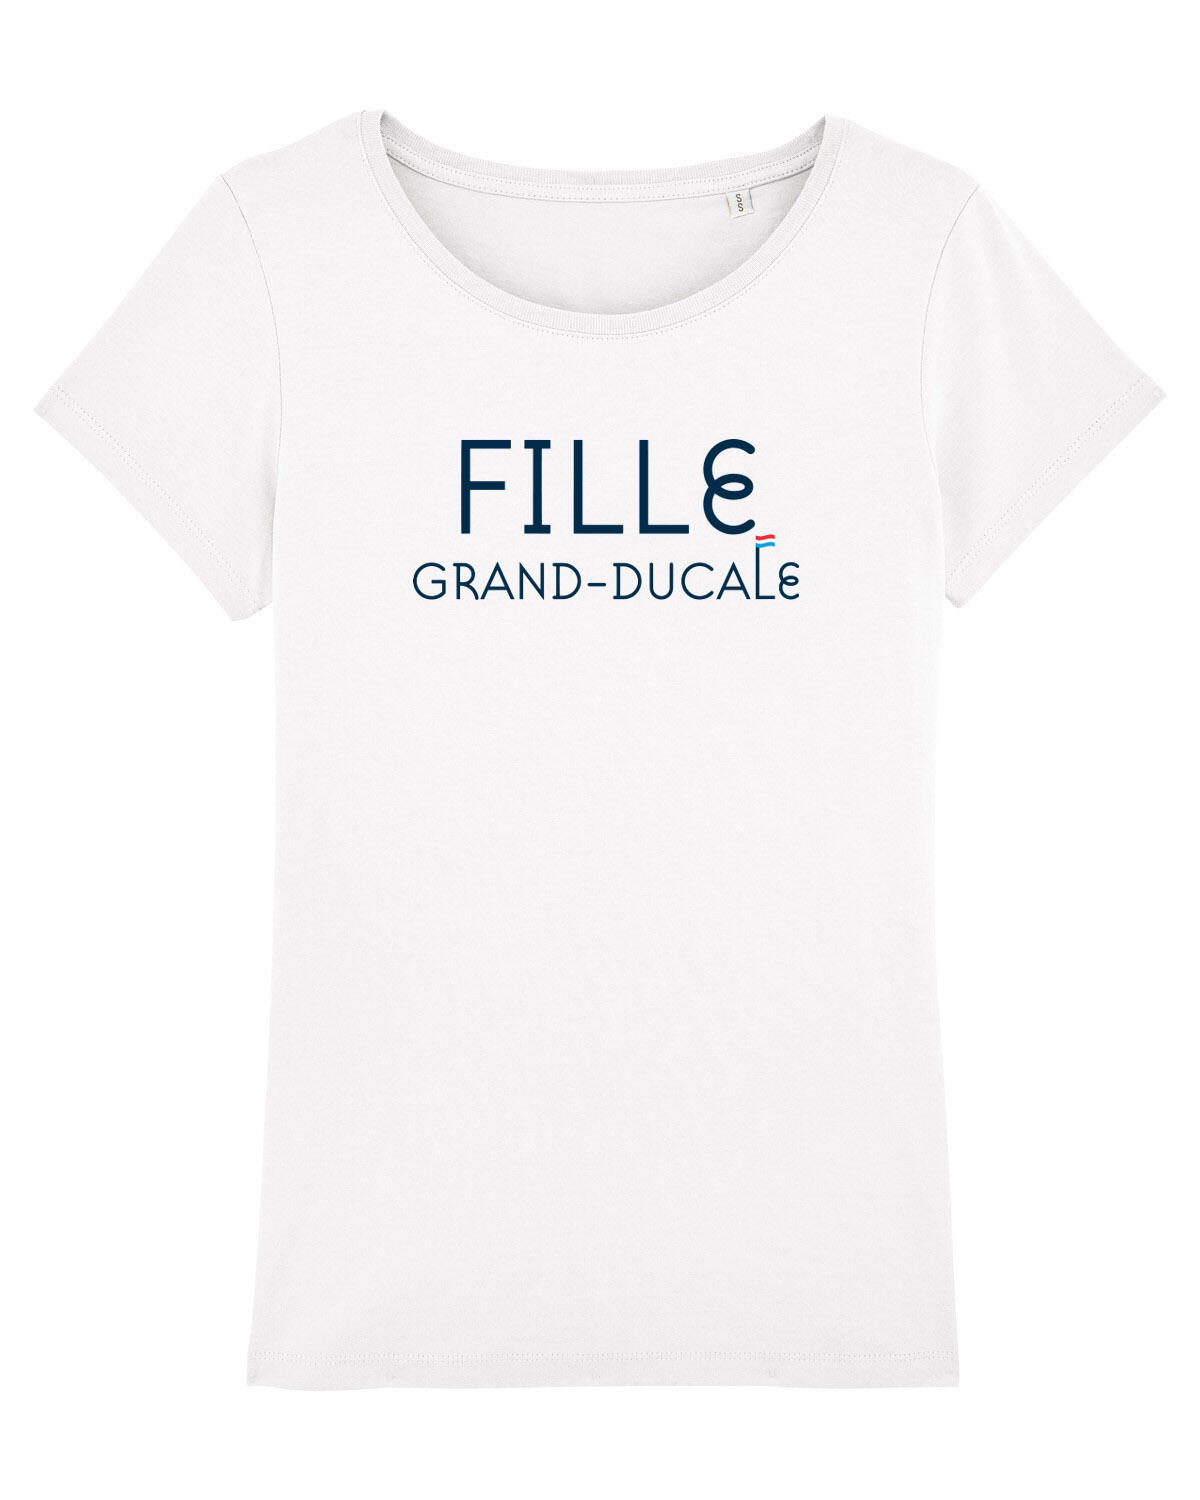 Tee shirt "grand-ducal girl" white 